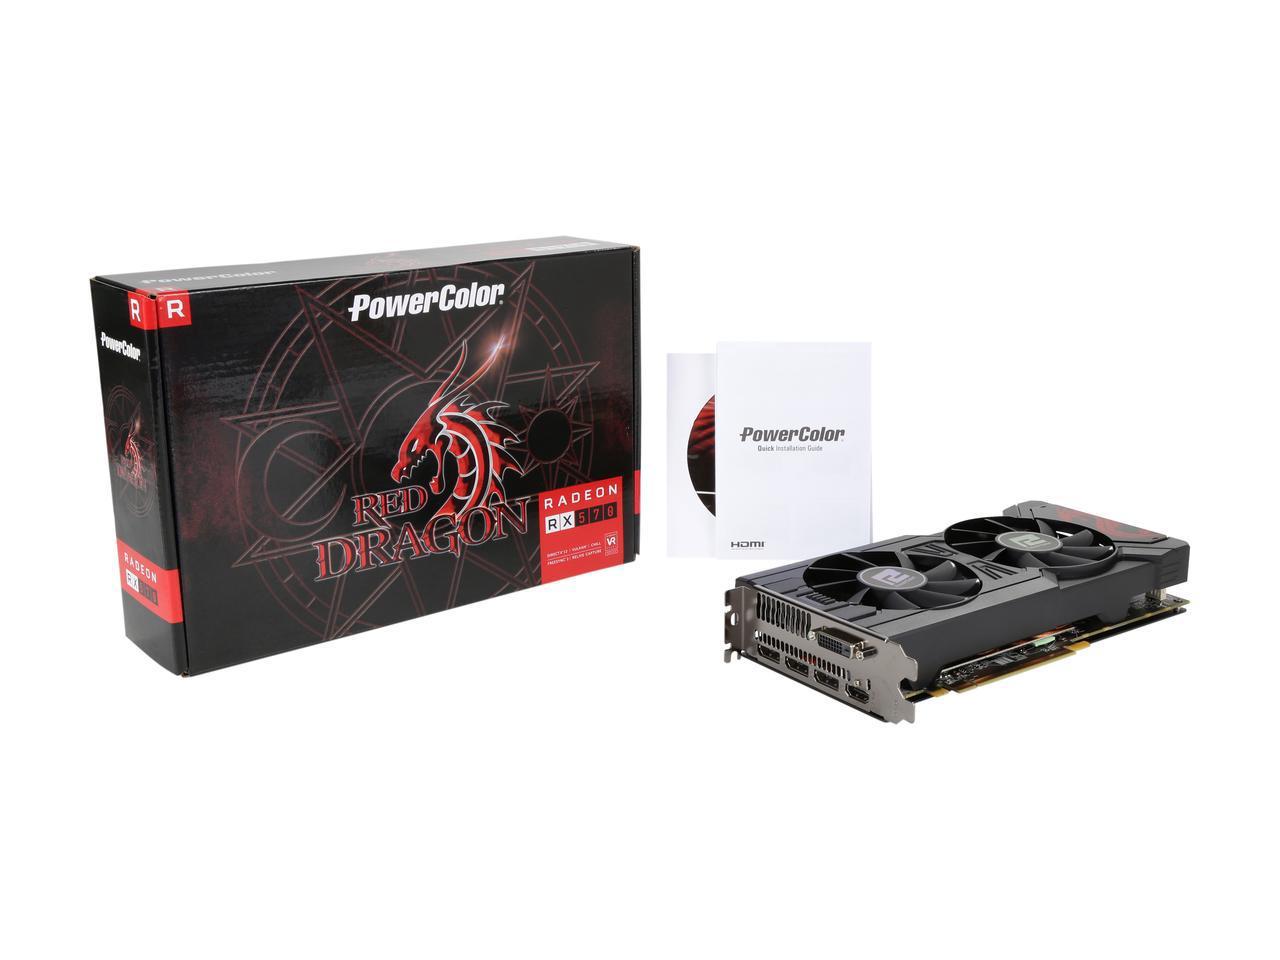 PowerColor RED DRAGON Radeon RX 570 DirectX 12 AXRX 570 4GBD5-3DHD/OC 4GB 256-Bit GDDR5 PCI Express 3.0 CrossFireX Support ATX Video Card